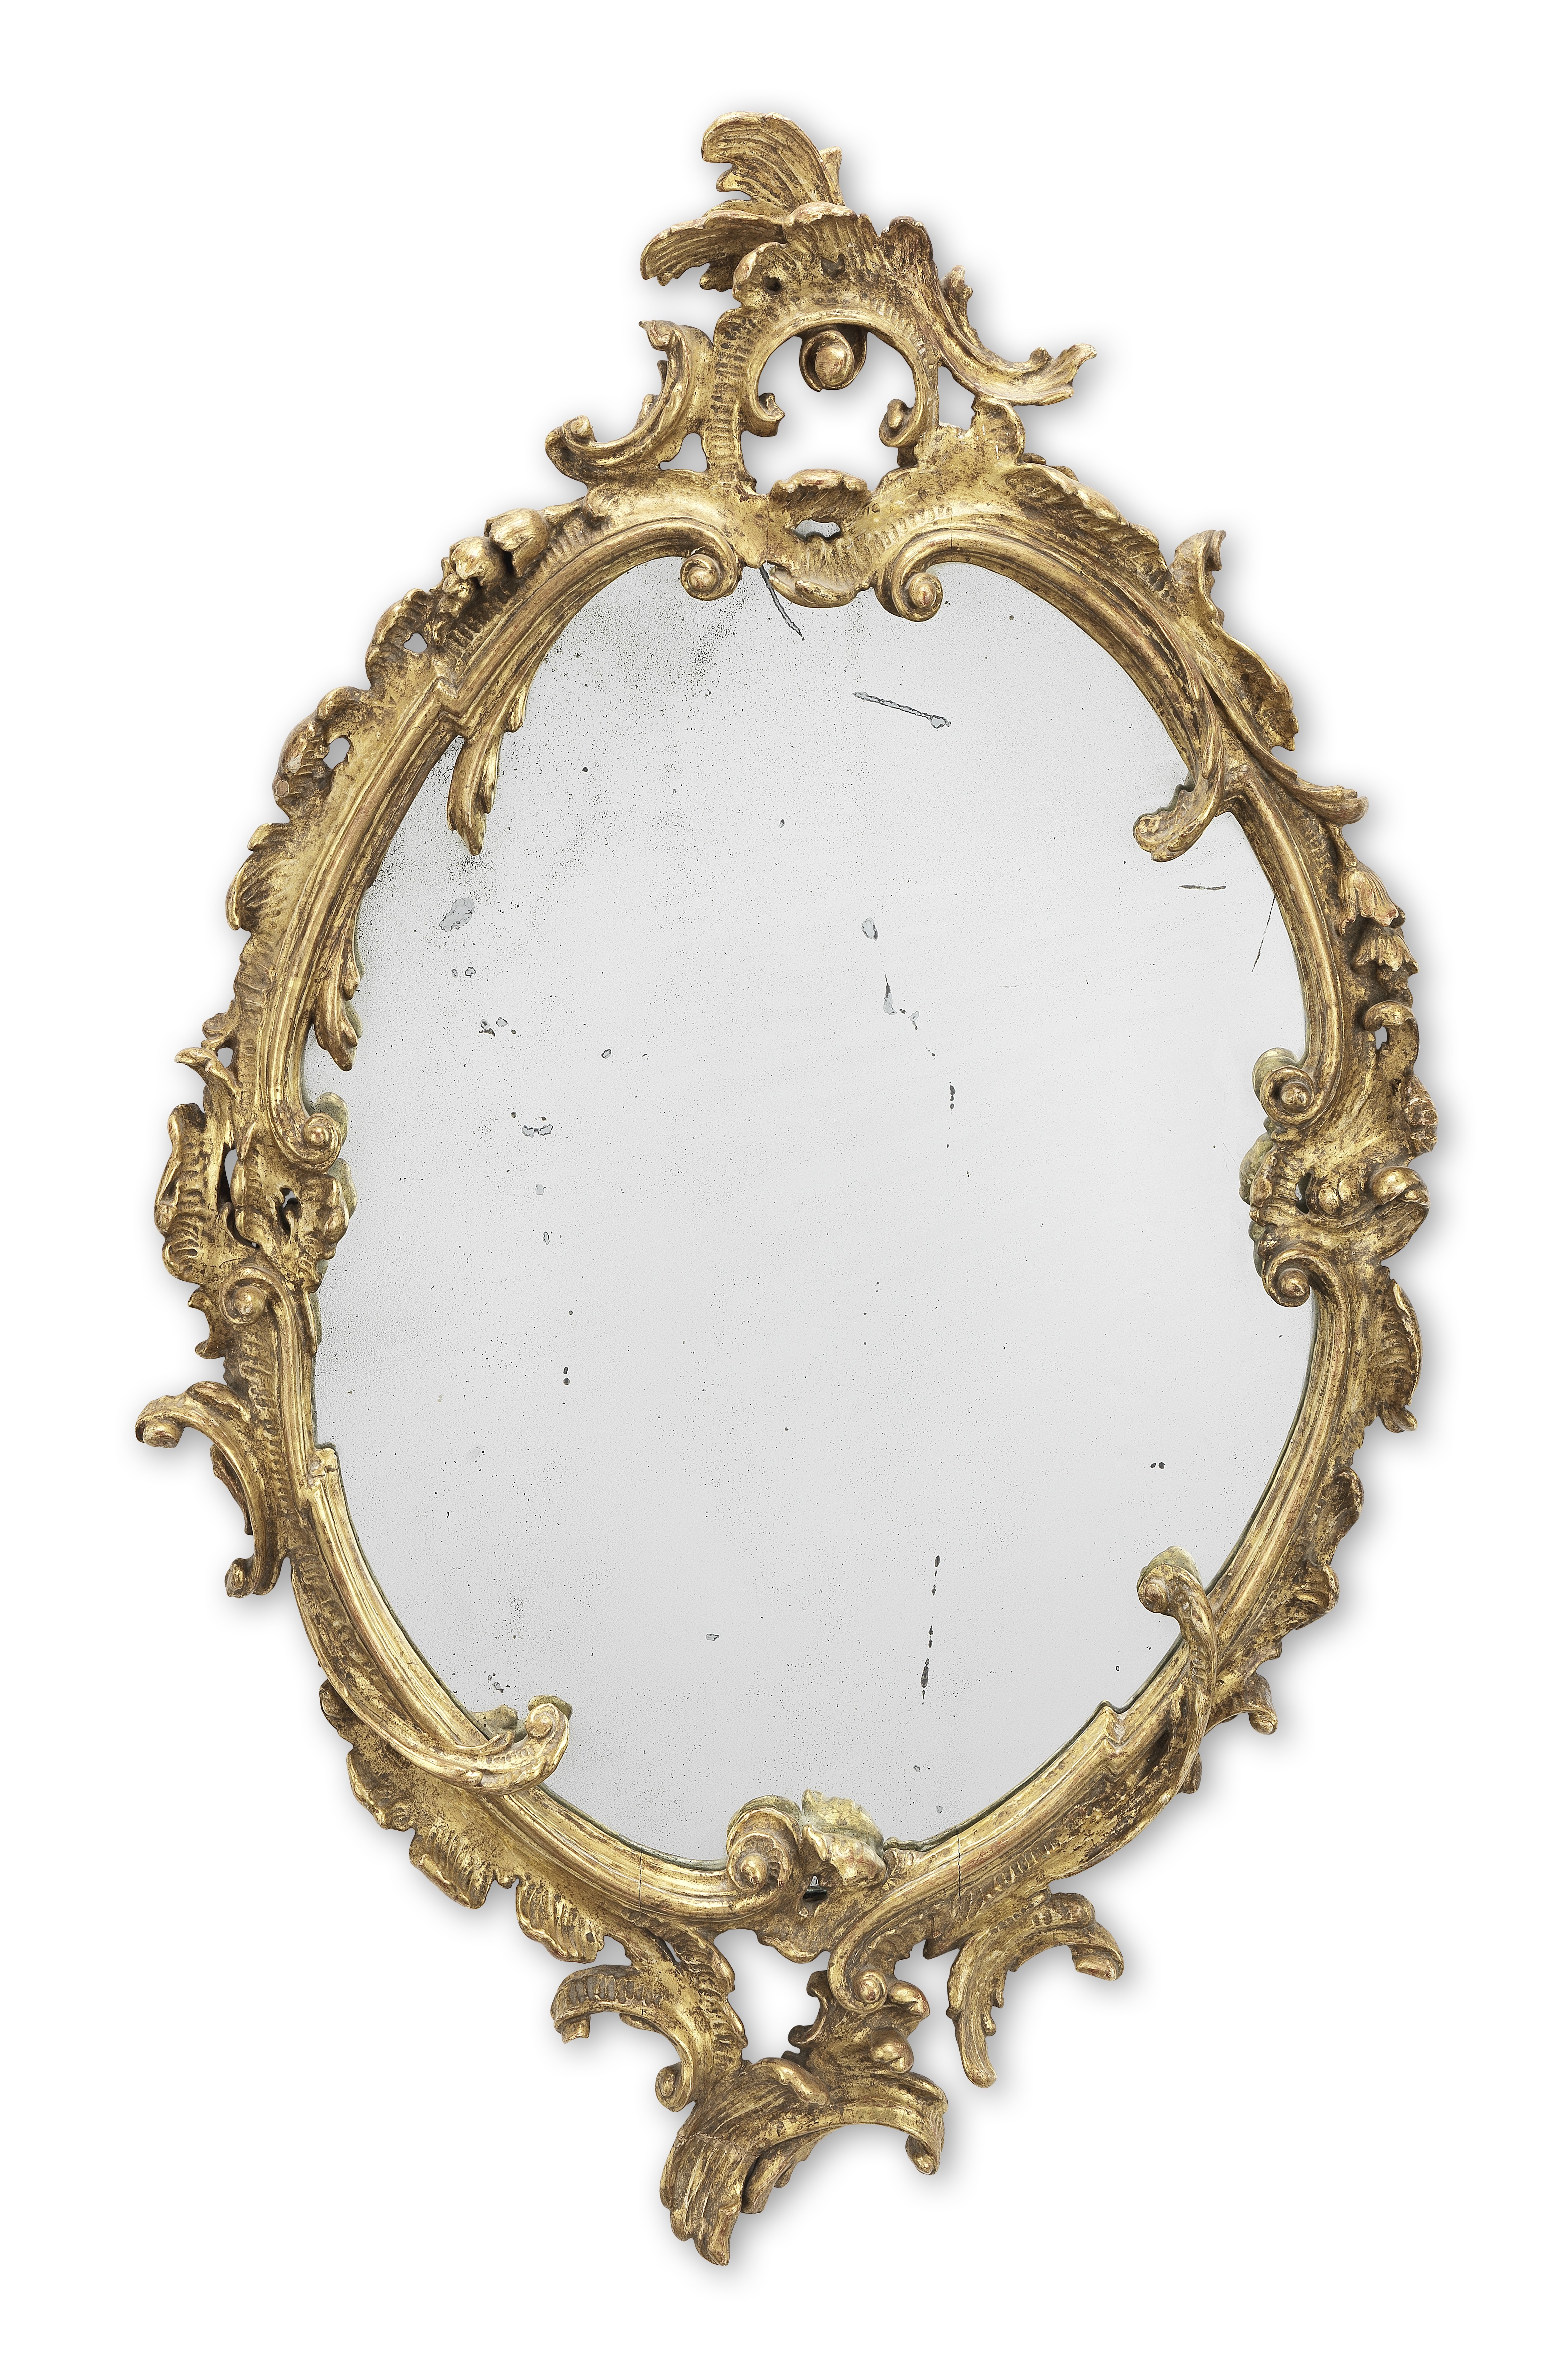 A 19th century Rococo revival giltwood mirror